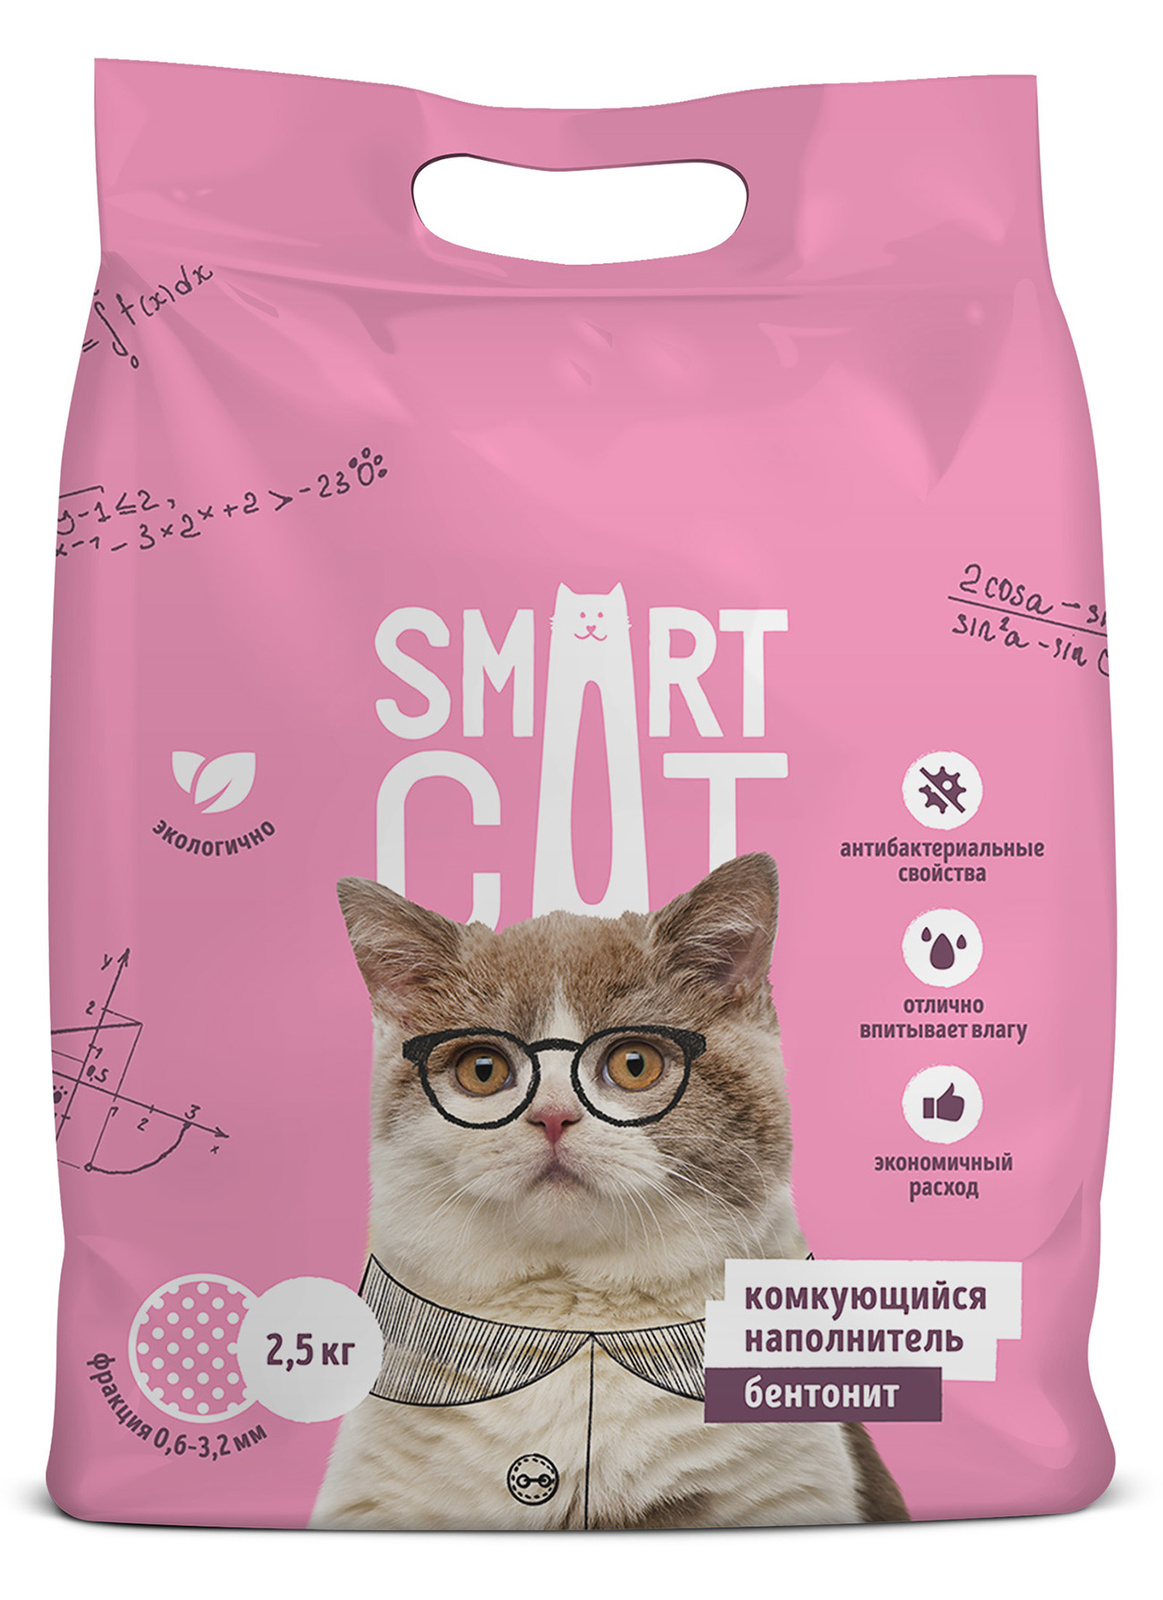 Smart Cat наполнитель Smart Cat наполнитель комкующийся наполнитель (5 кг) smart cat наполнитель впитывающий наполнитель 10л 5 кг средняя фракция 66ур25 5 кг 52862 1 шт